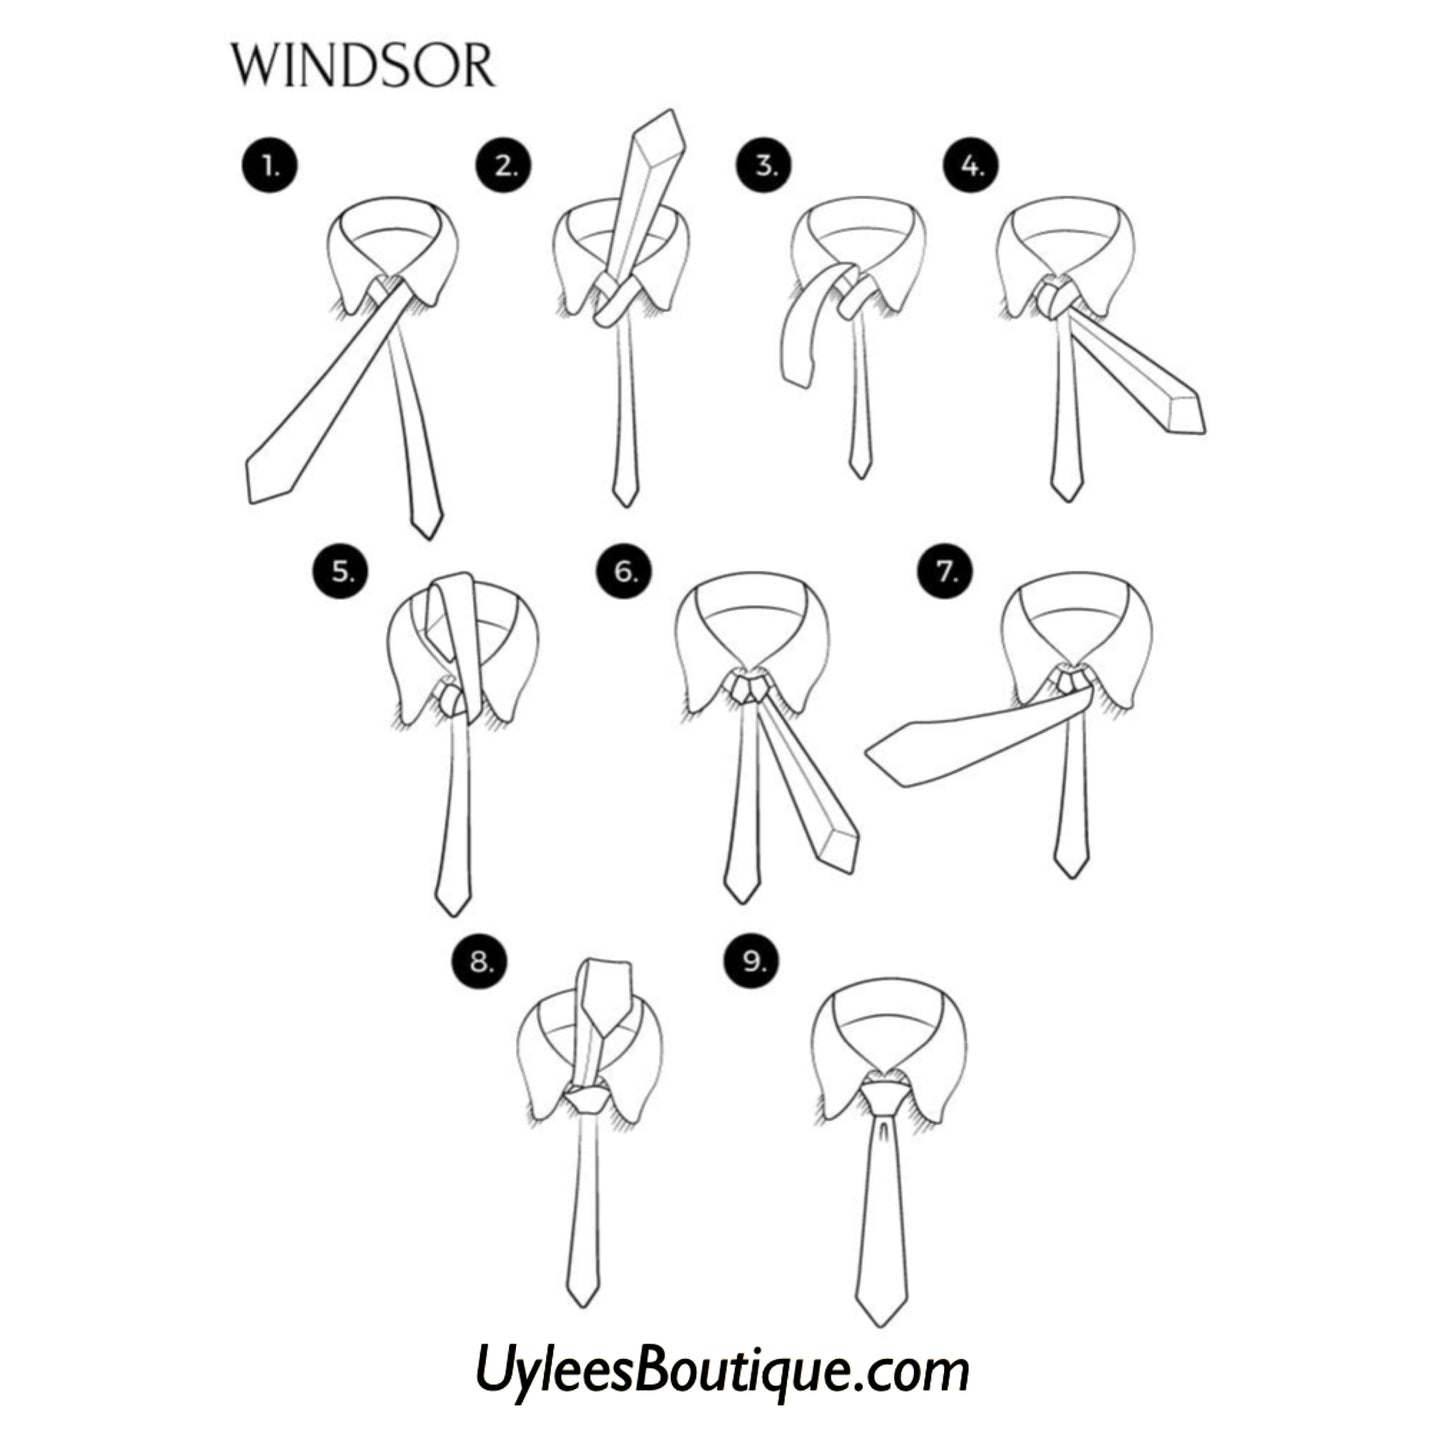 Men’s Silk Coordinated Tie Set - Brown Striped (6085)